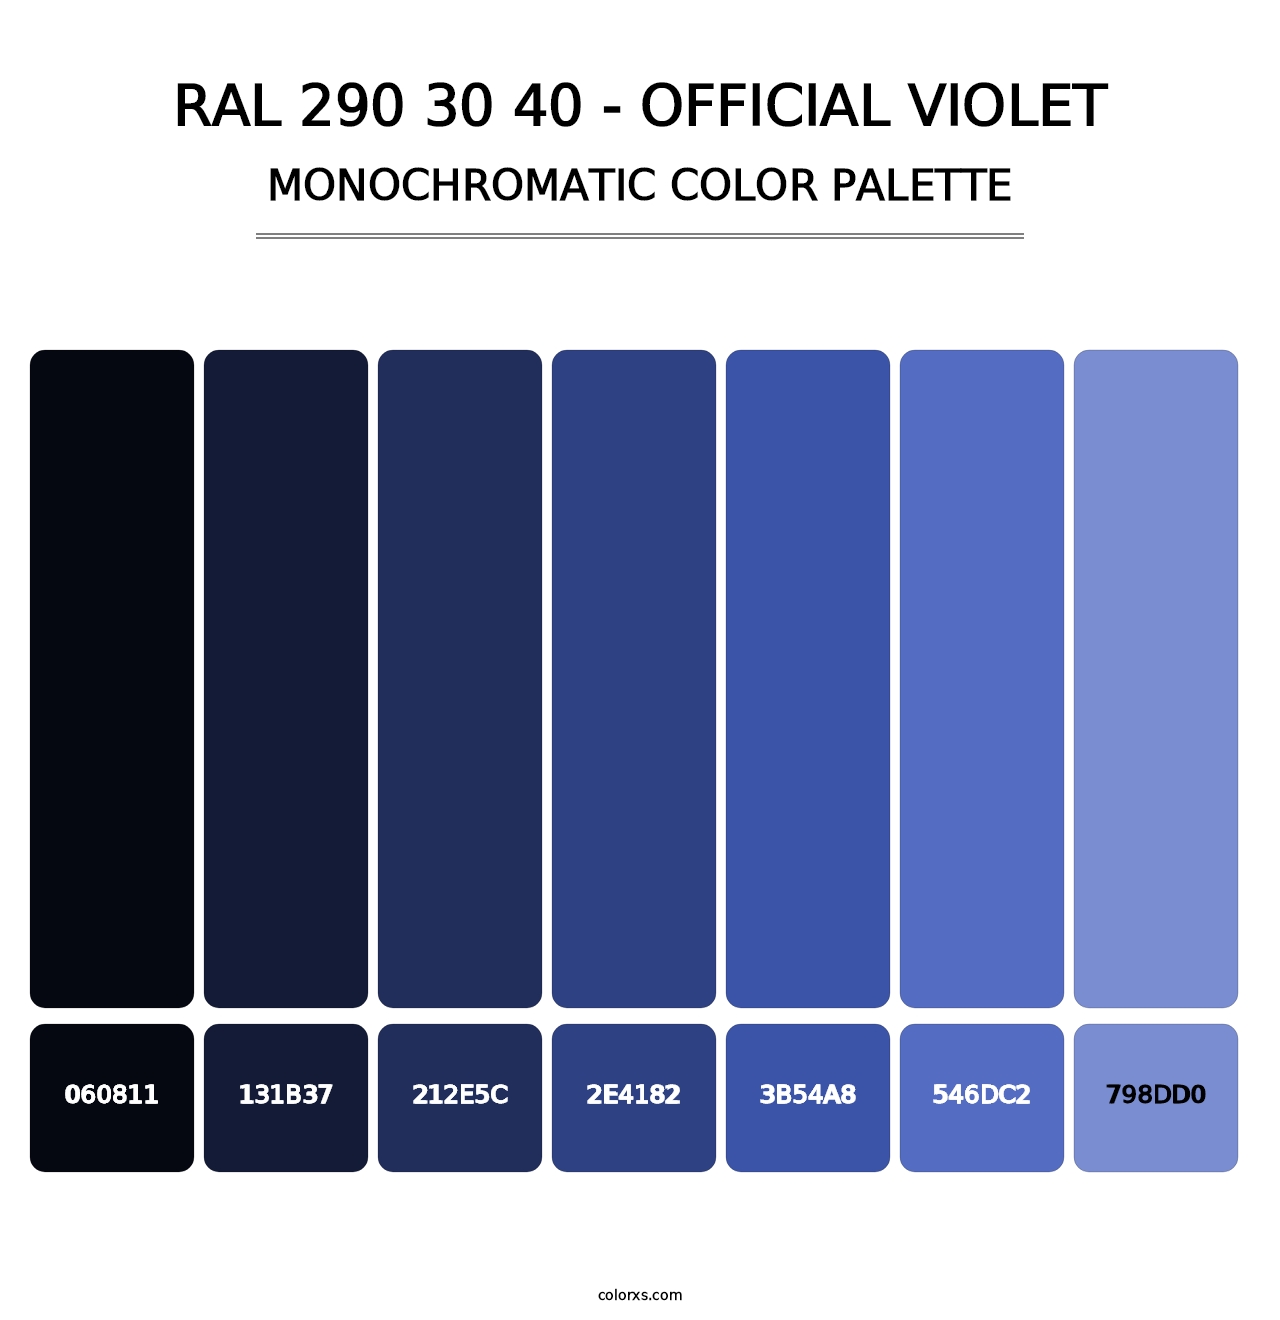 RAL 290 30 40 - Official Violet - Monochromatic Color Palette